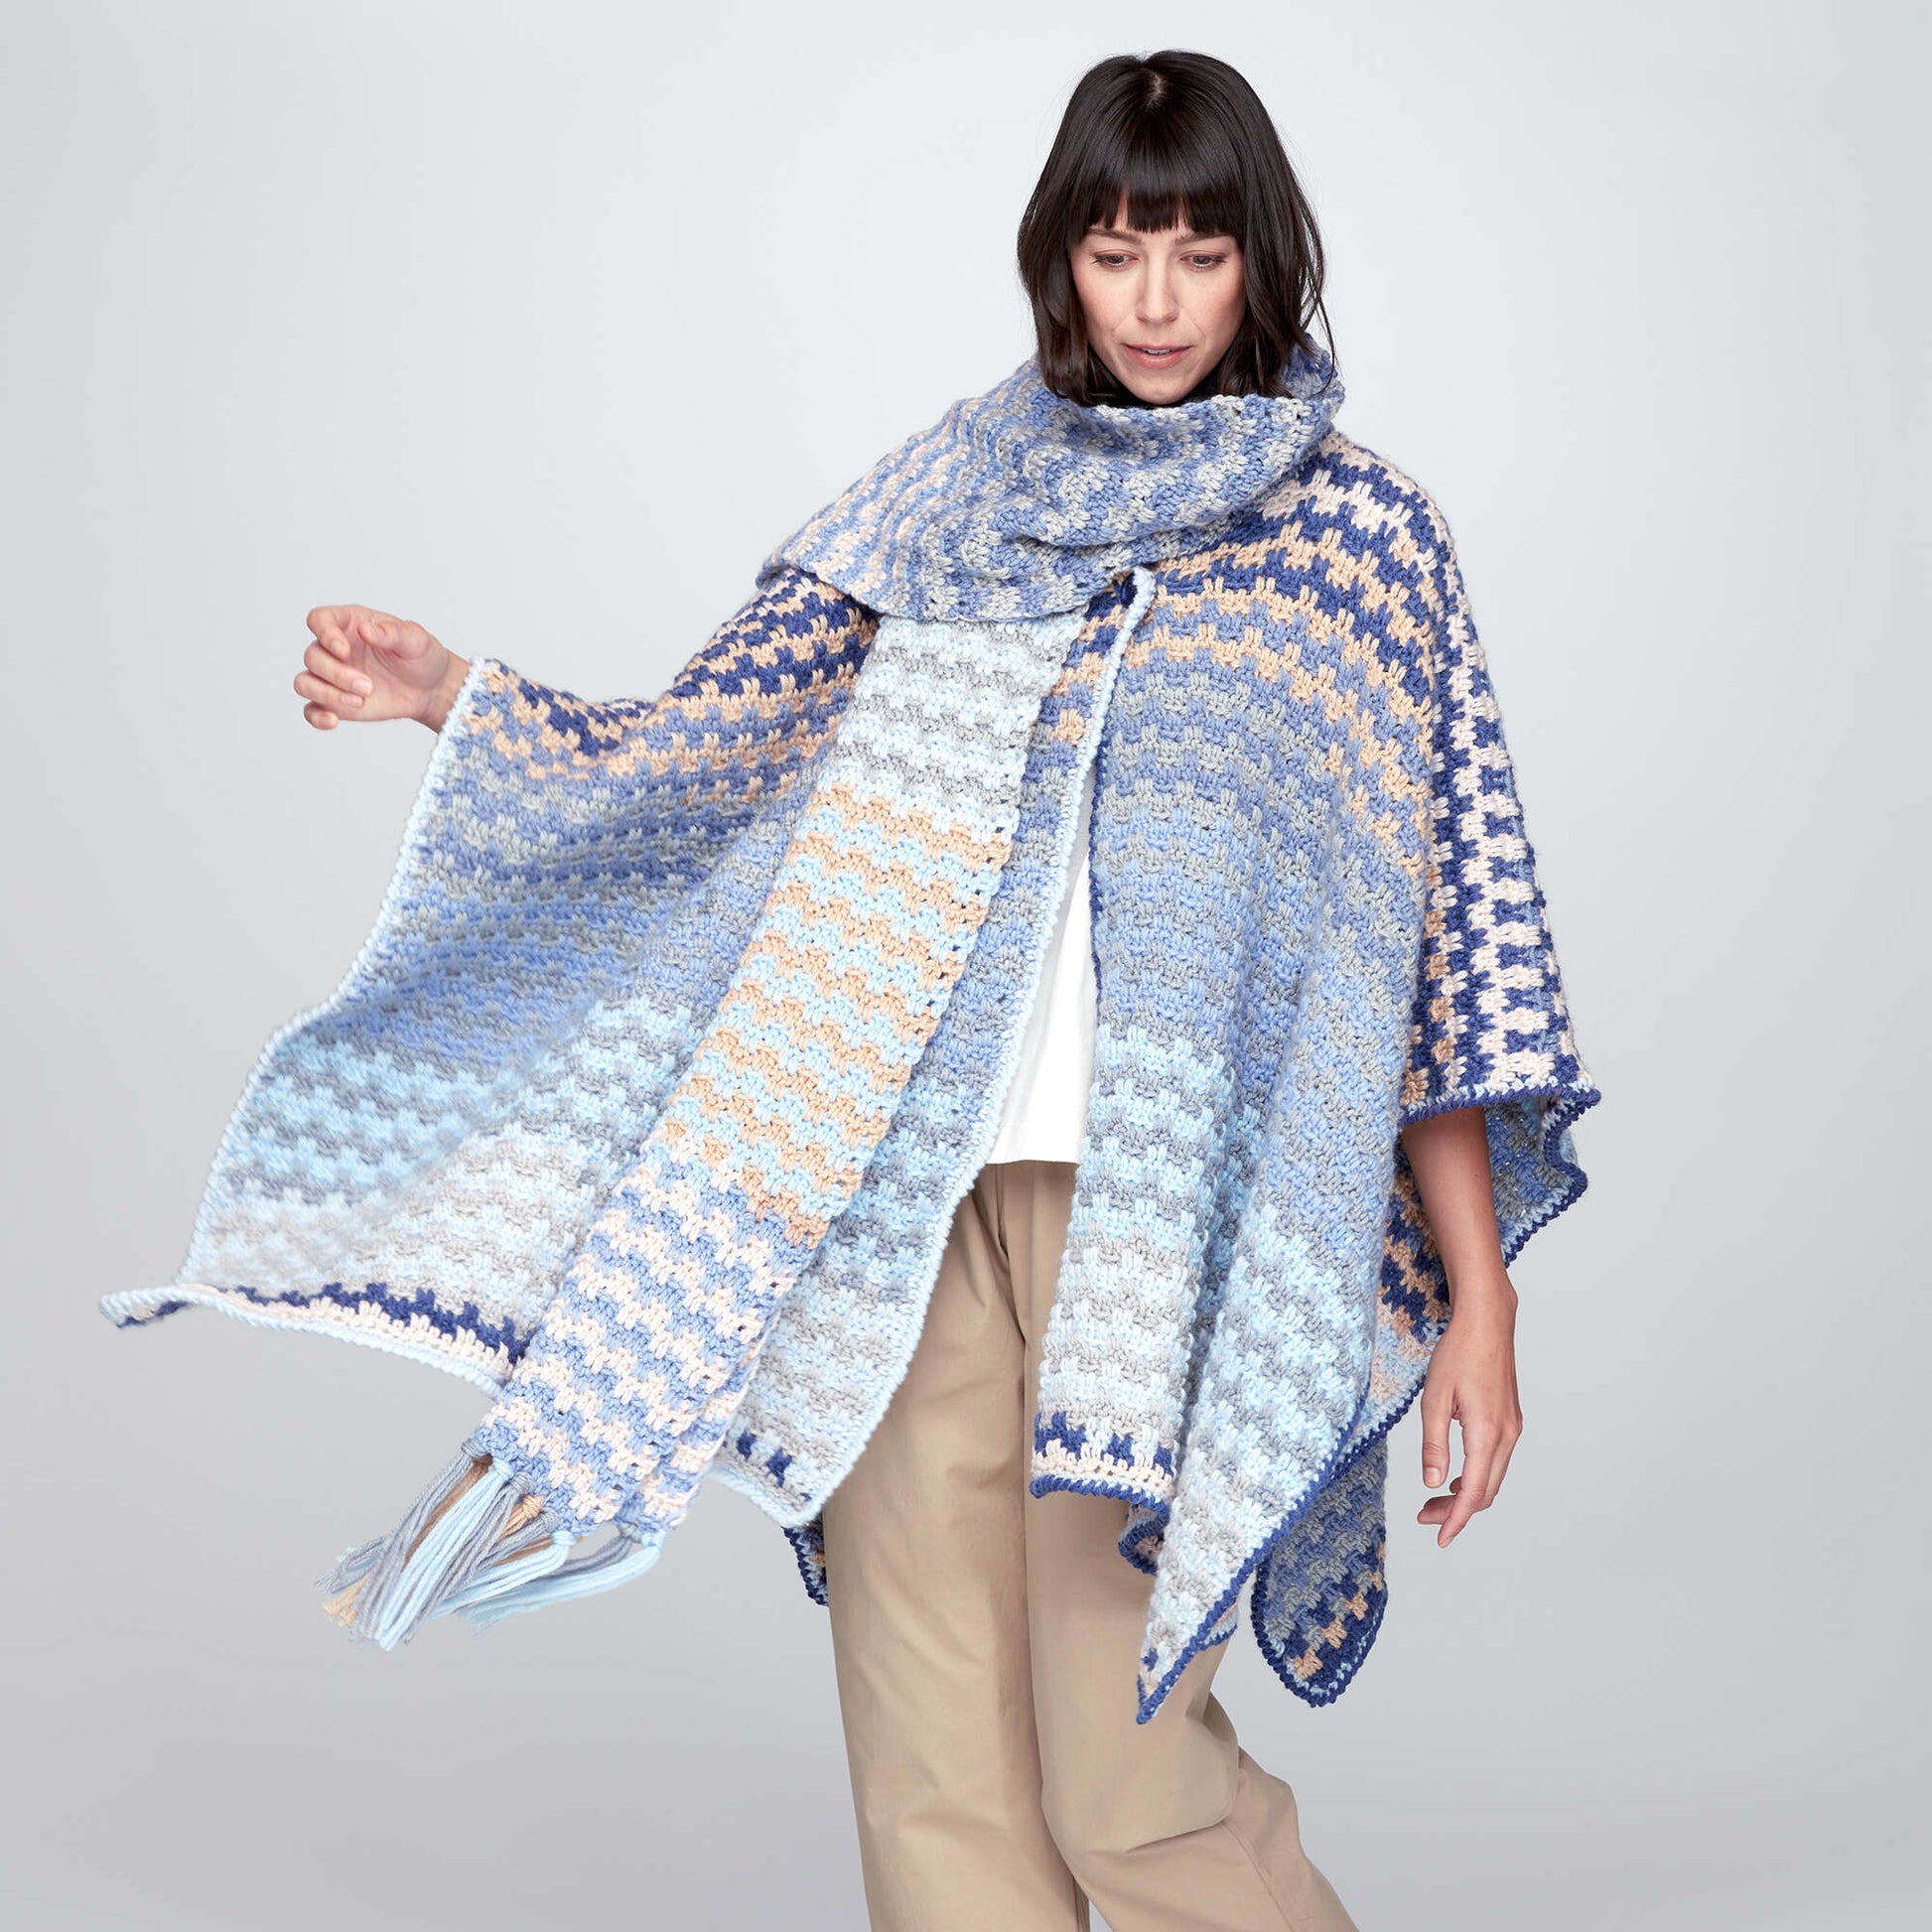 Free Bernat Color Weave Crochet Wrap Pattern